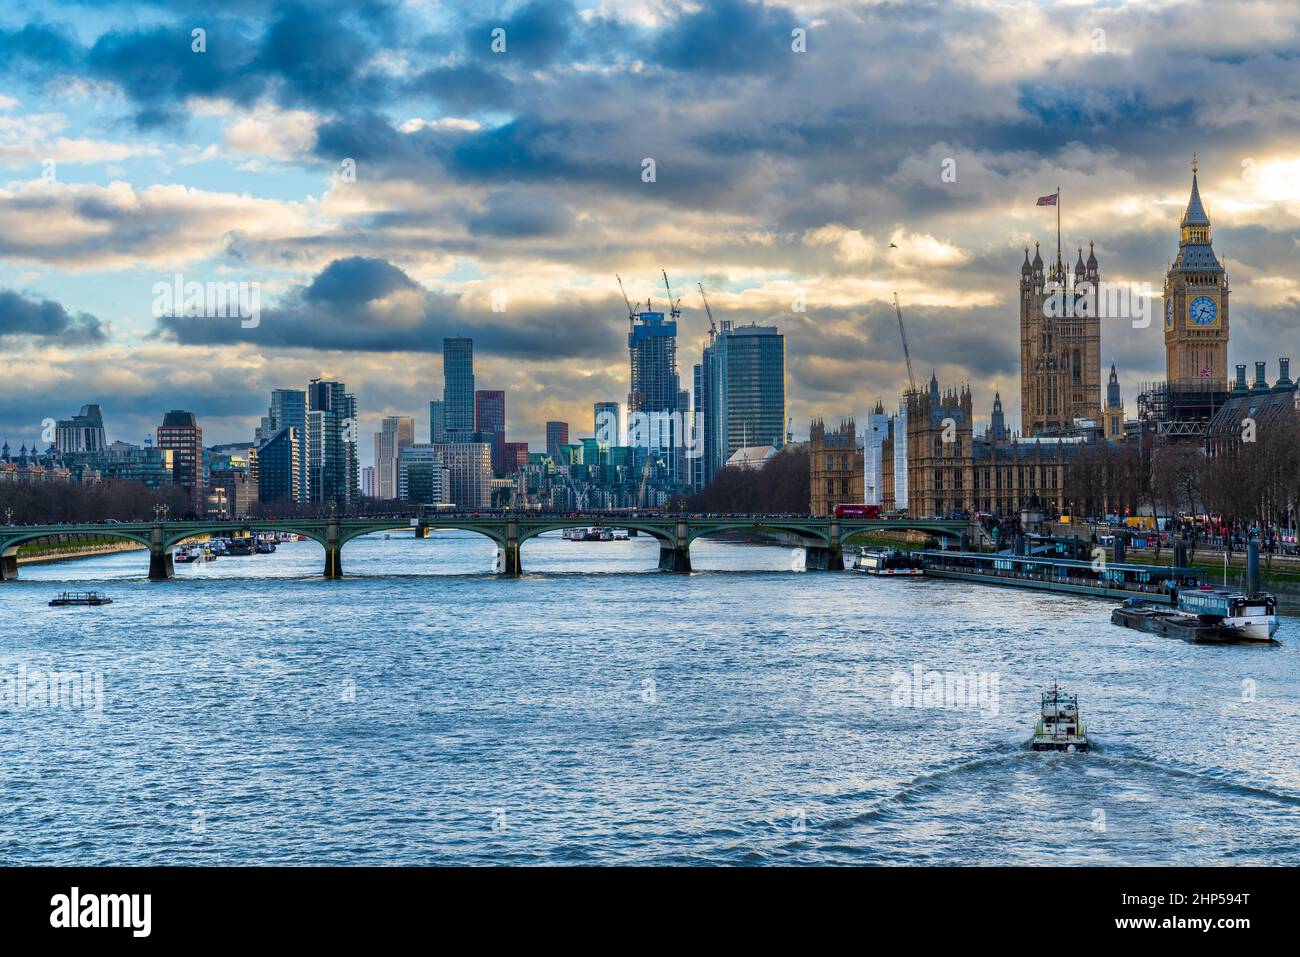 Westminster Bridge und Houses of Parliament von der Jubilee Bridge aus gesehen, London Borough of Lambethseen, Großbritannien, Europa. Stockfoto